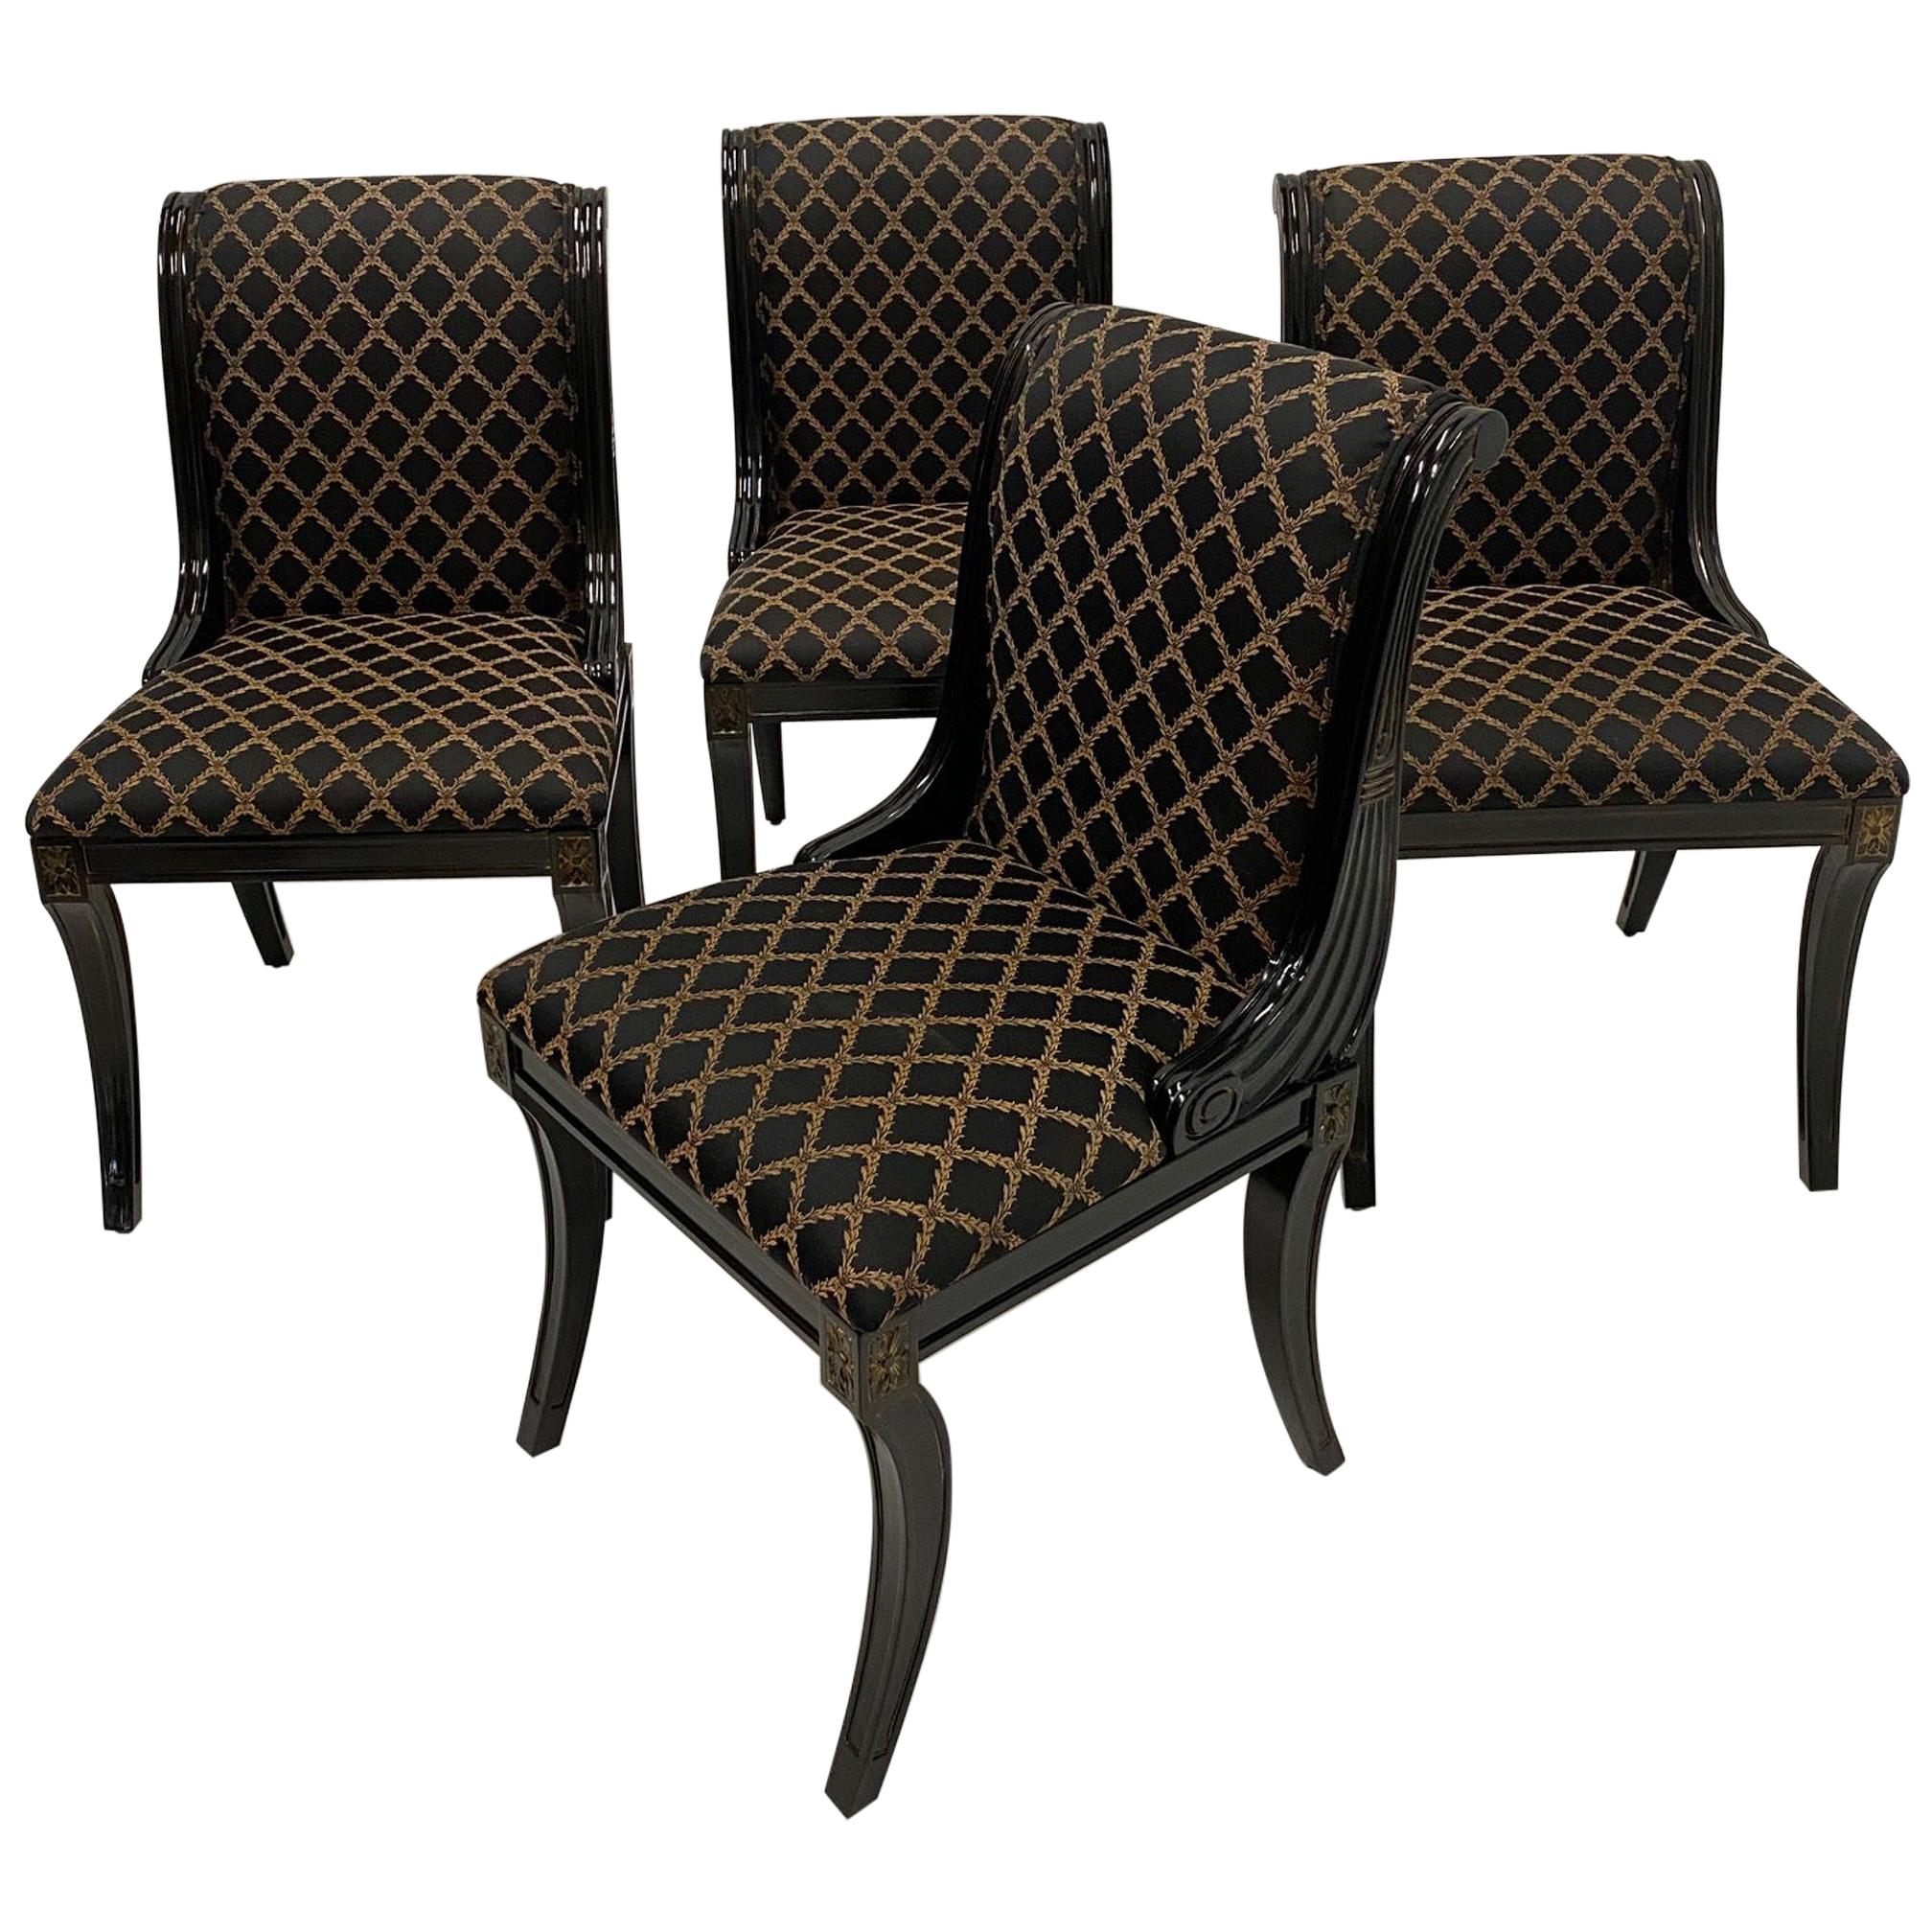 Glamorous Set of 4 Hollywood Regency Ebonized & Gilt Decorated Dining Chairs